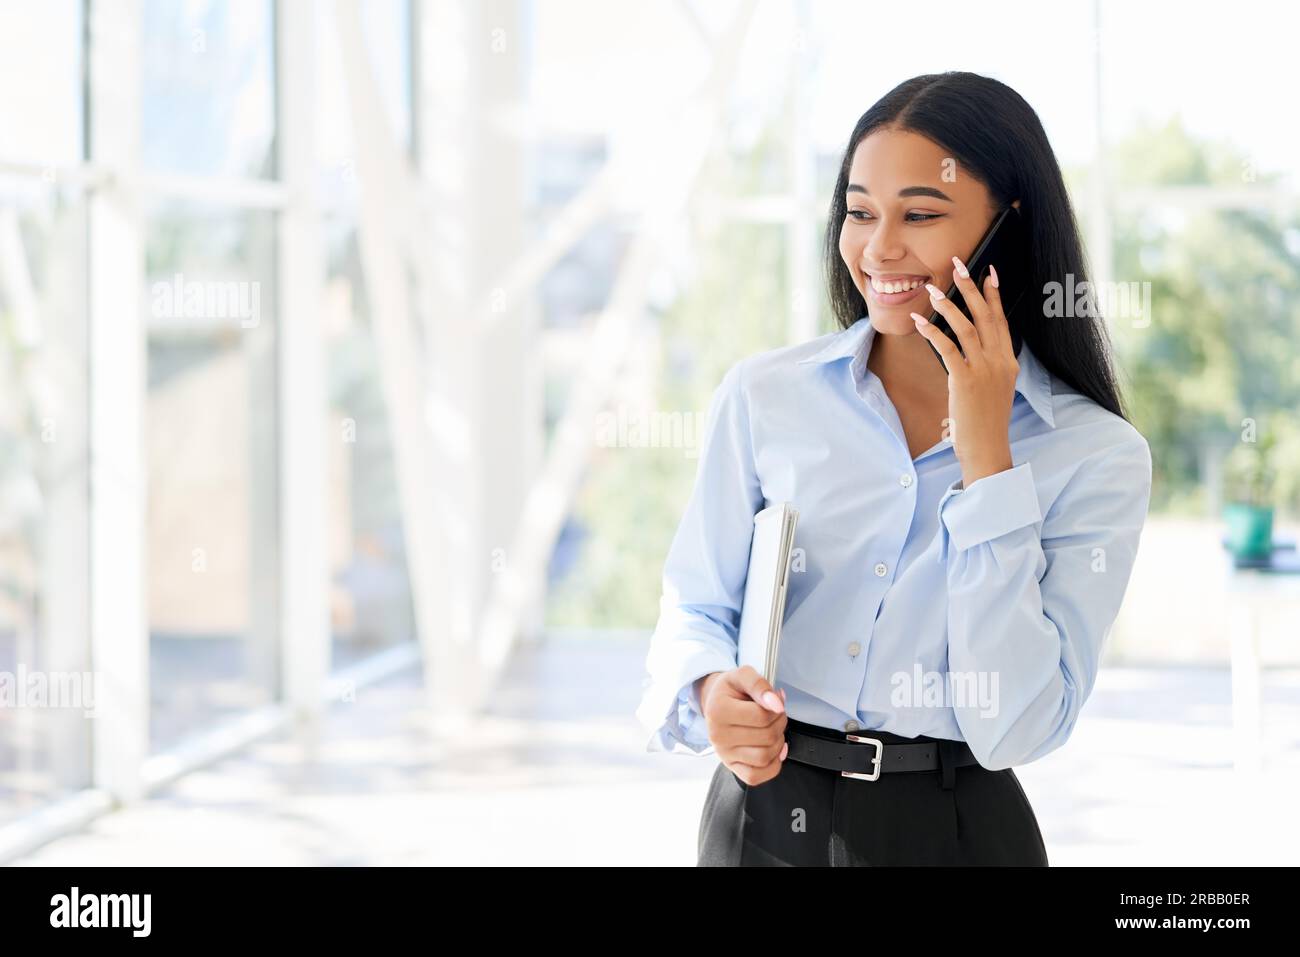 Lächelnde afroamerikanische Geschäftsfrau telefoniert in einem offenen, modernen Büro mit Panoramafenstern im Hintergrund. Speicherplatz kopieren. Kommunikation. Stockfoto